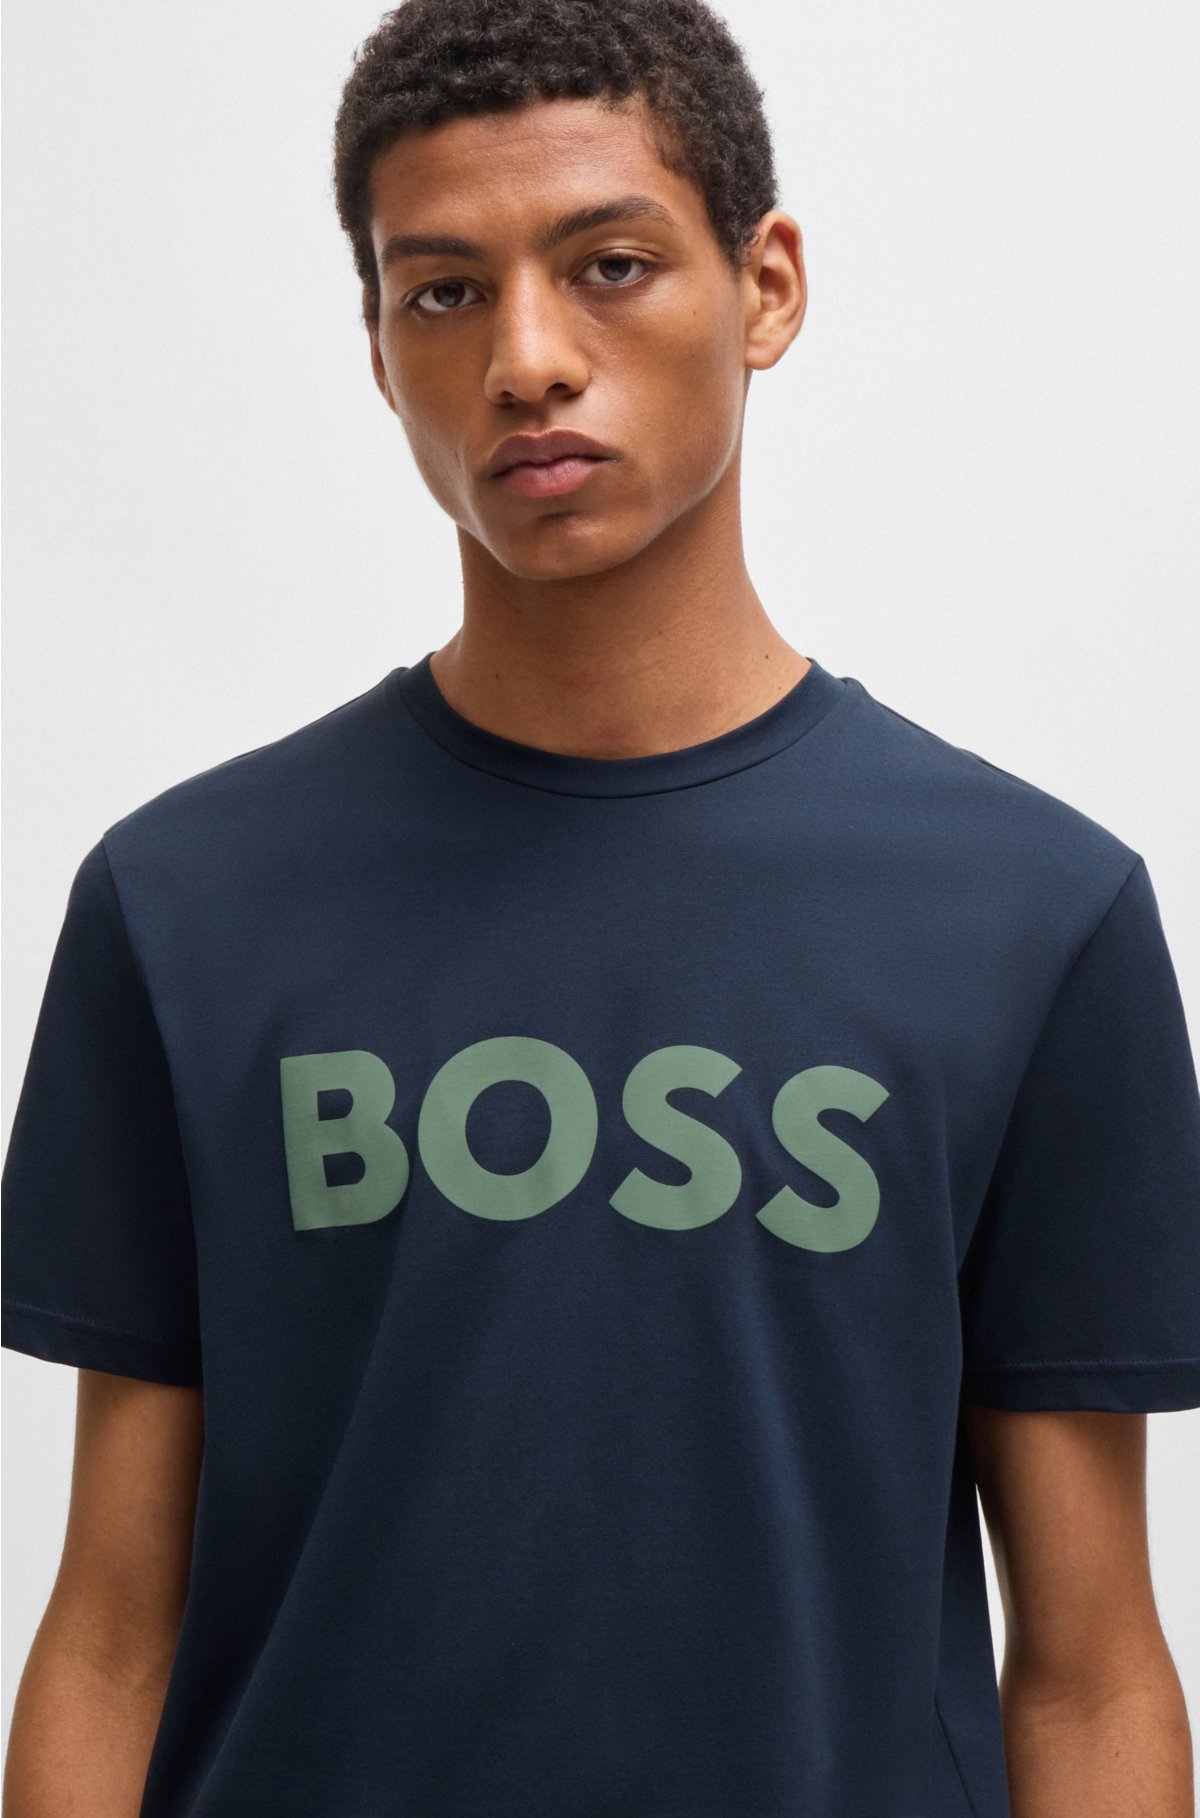 BOSS HUGO BOSS, Midnight blue Men's T-shirt